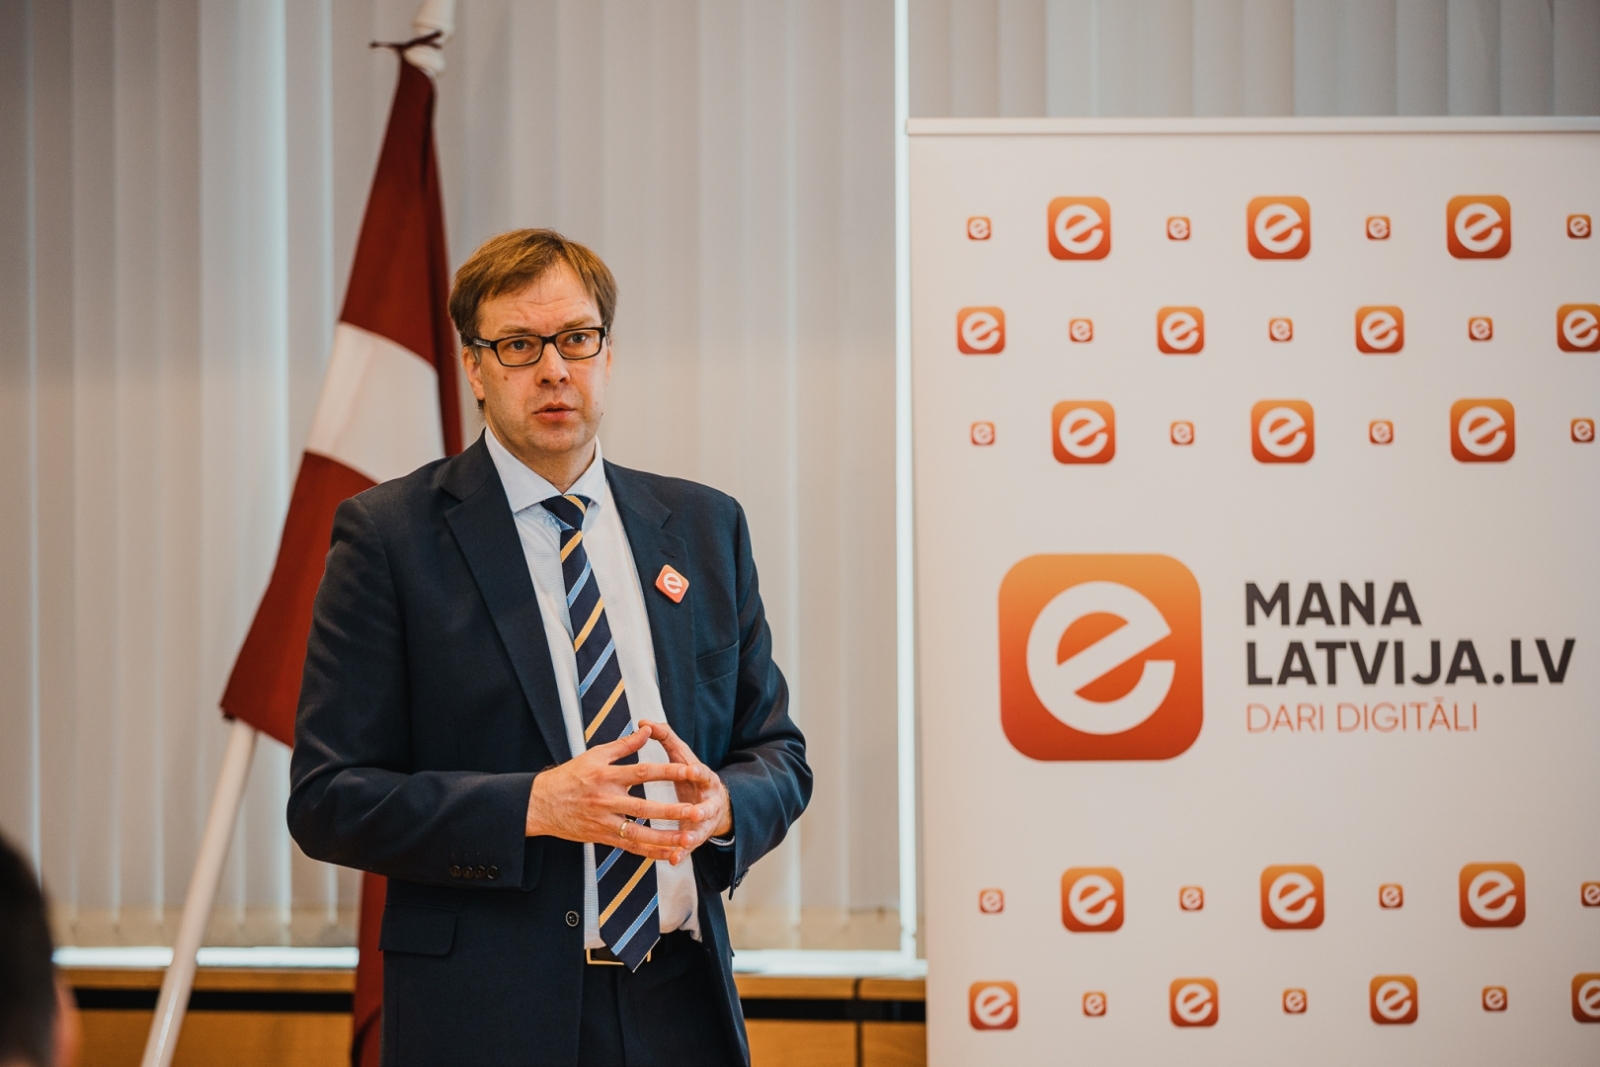 Domapmaiņa par Latvija.lv pielāgošanu mobilajām ierīcēm